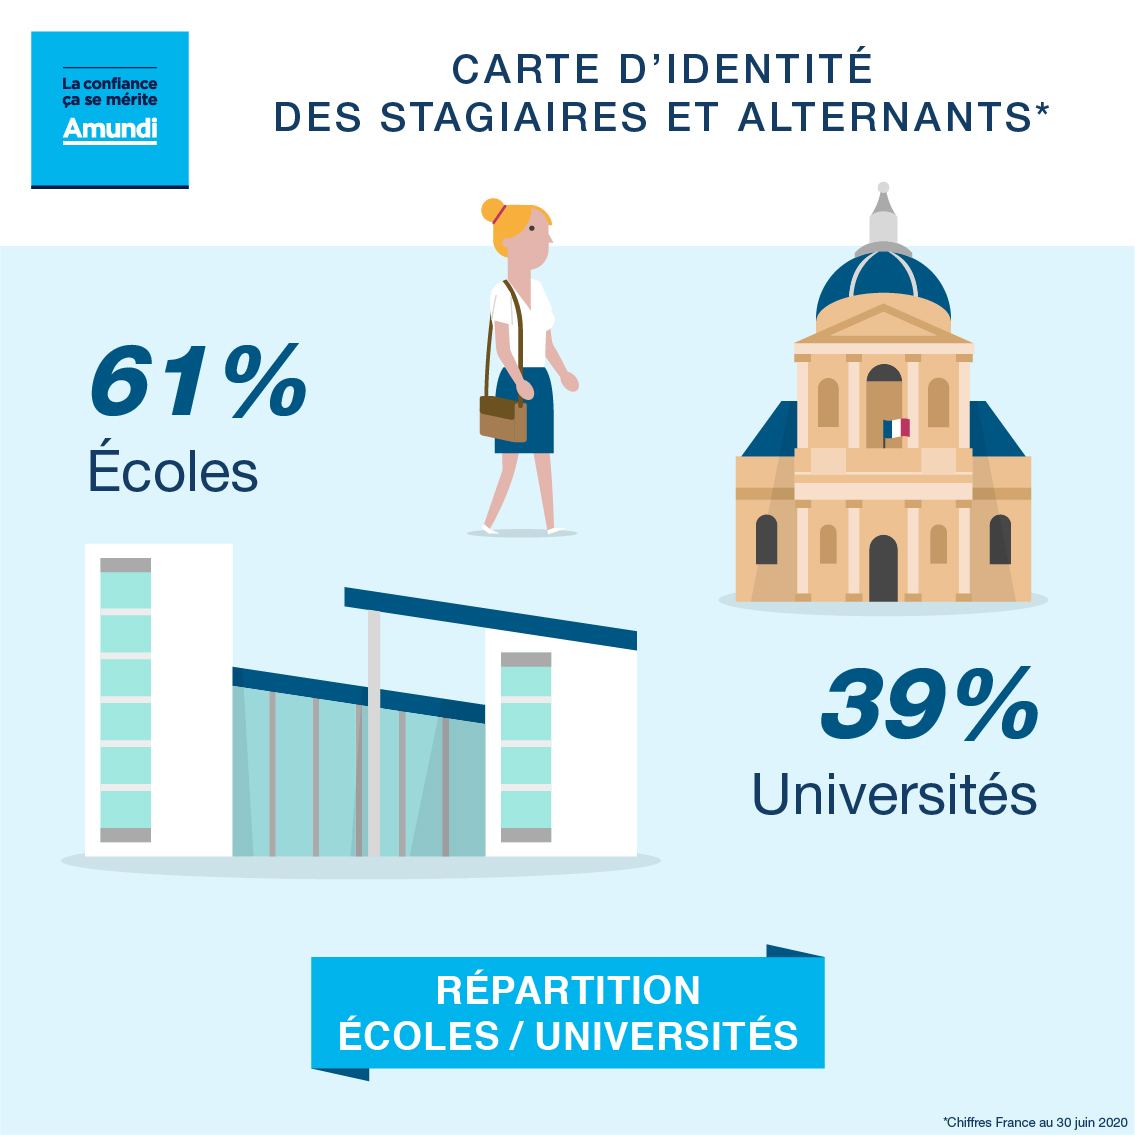 La confiance cela se mérite AMUNDI Carte d'identité des stagiaires et alternants Répartition ECOLES/UNIVERSITES 61% Ecoles 39% Universités